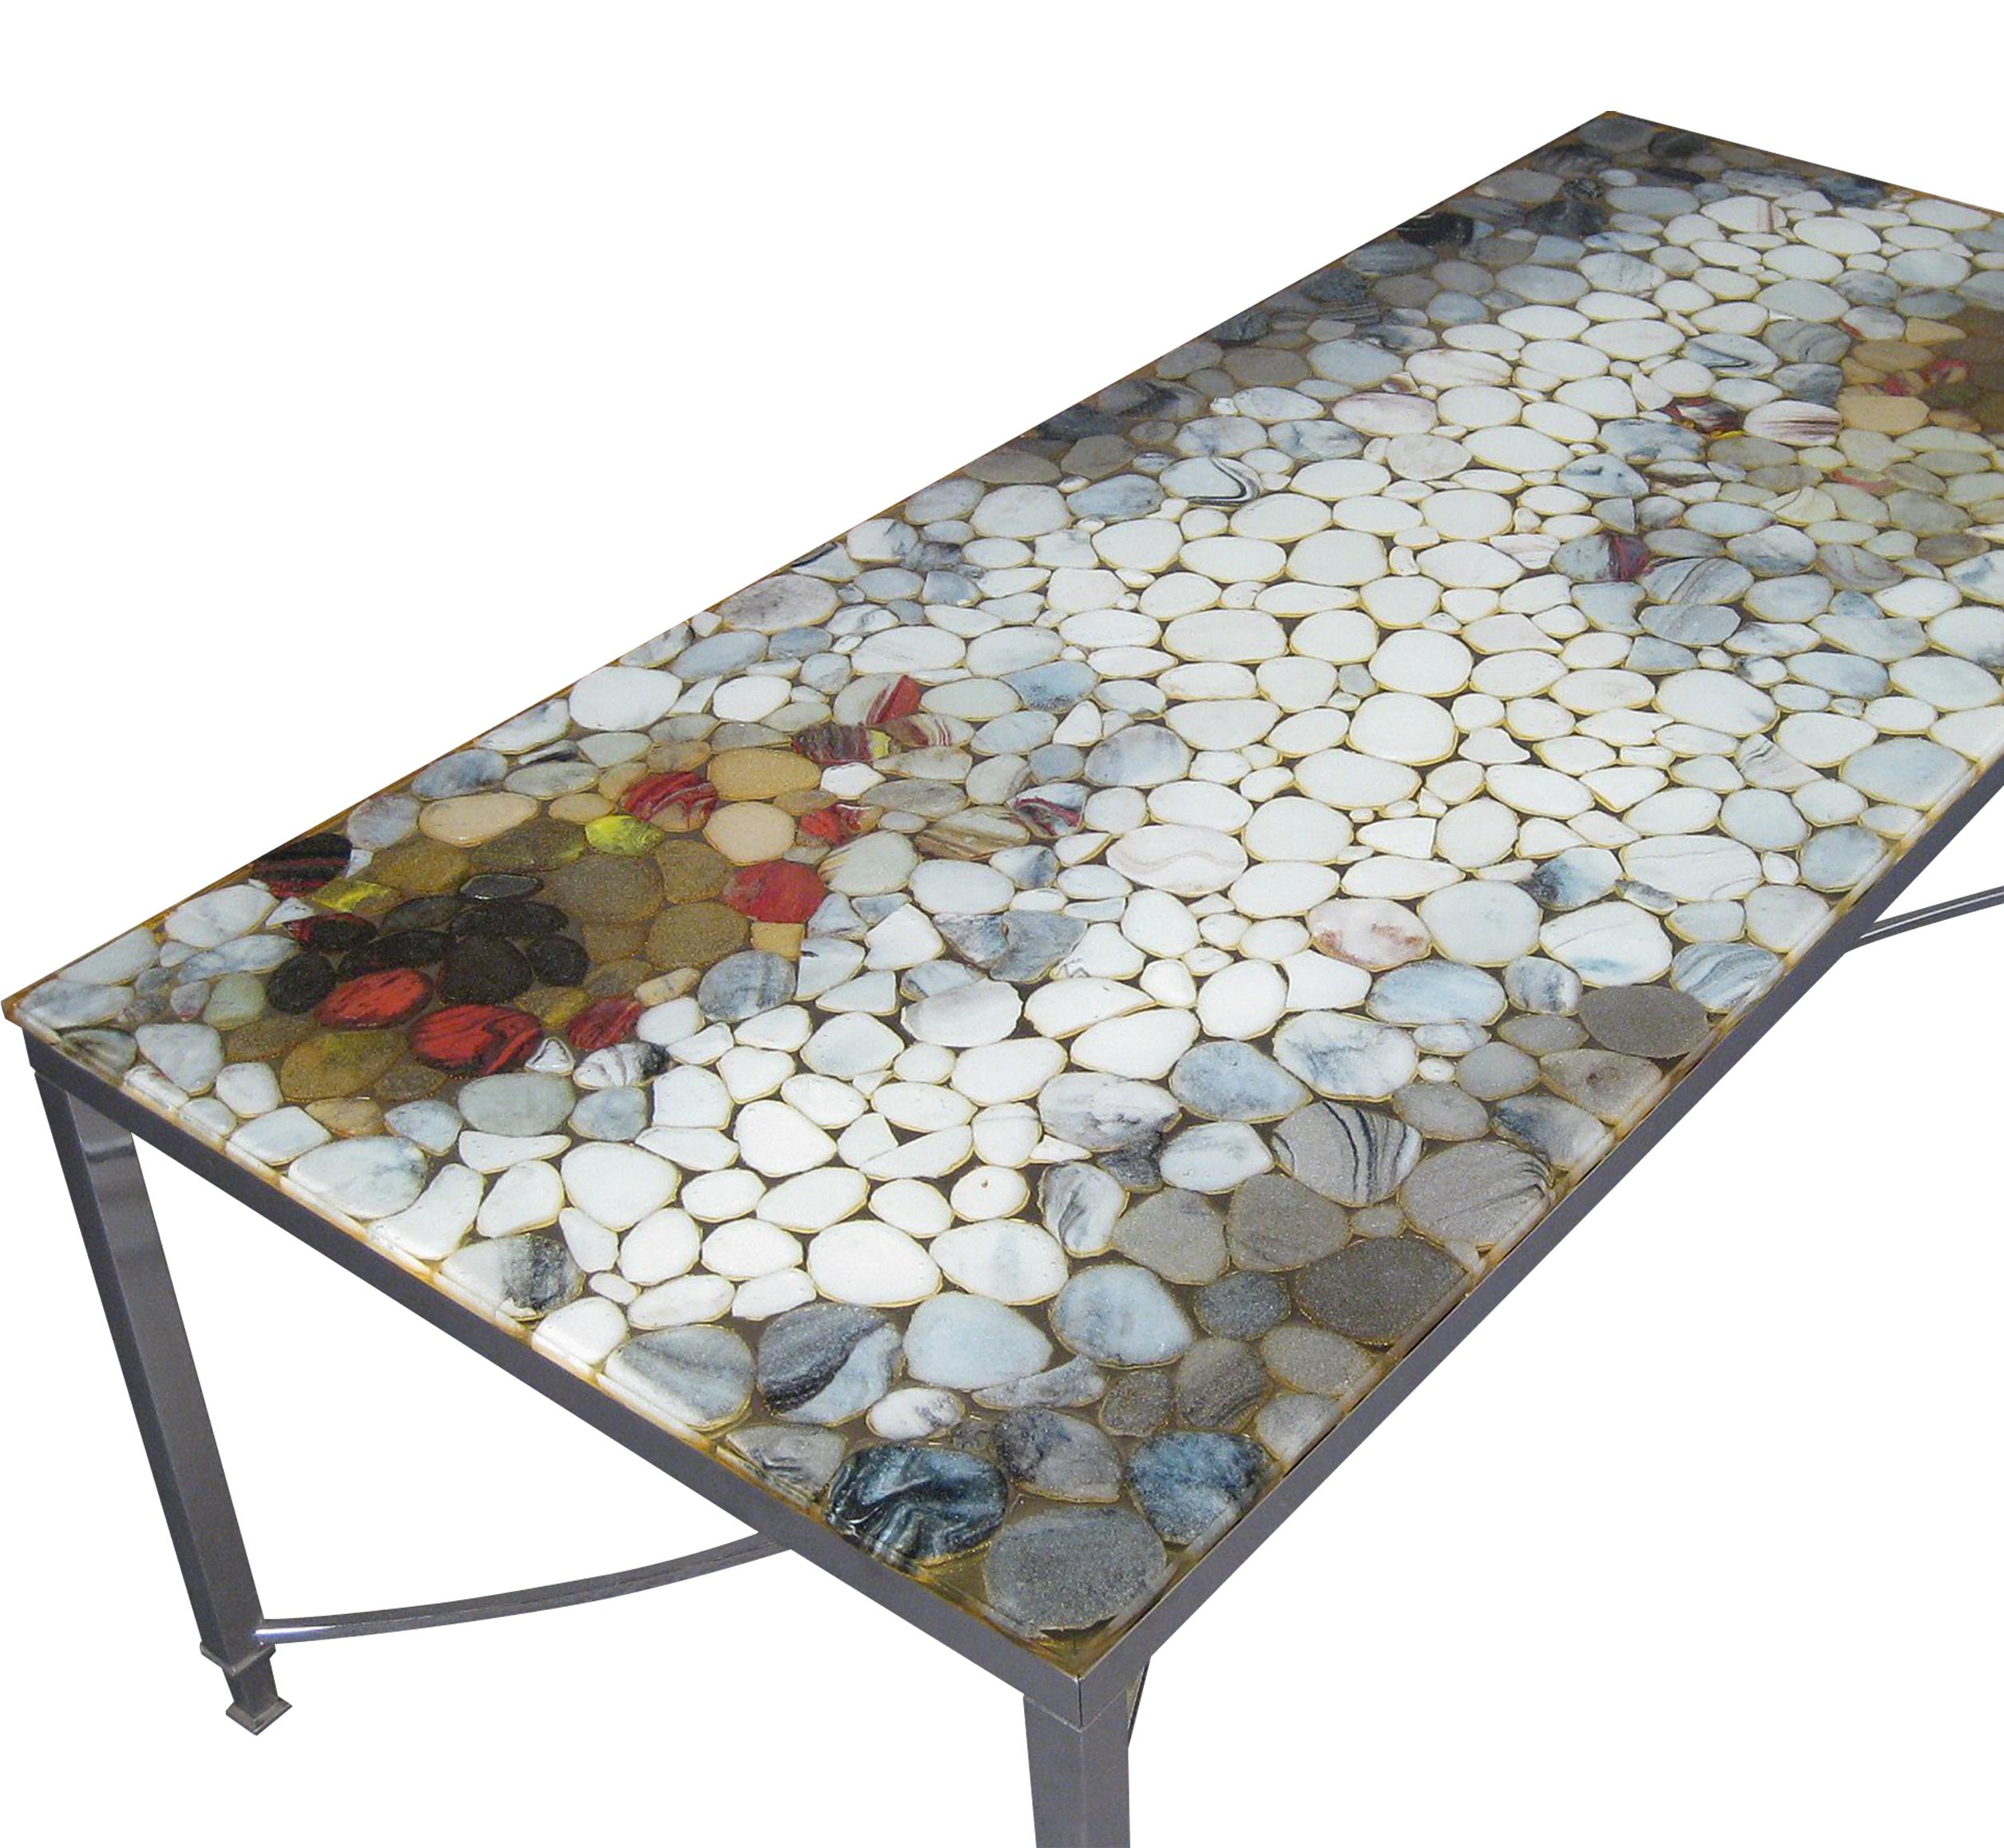 Élégante table basse rectangulaire vibrante attribuée au designer danois IB Kofod Larsen. La table est en très bon état, la structure est en métal chromé et le plateau a été créé avec des pierres naturelles de différentes couleurs placées en dégradé